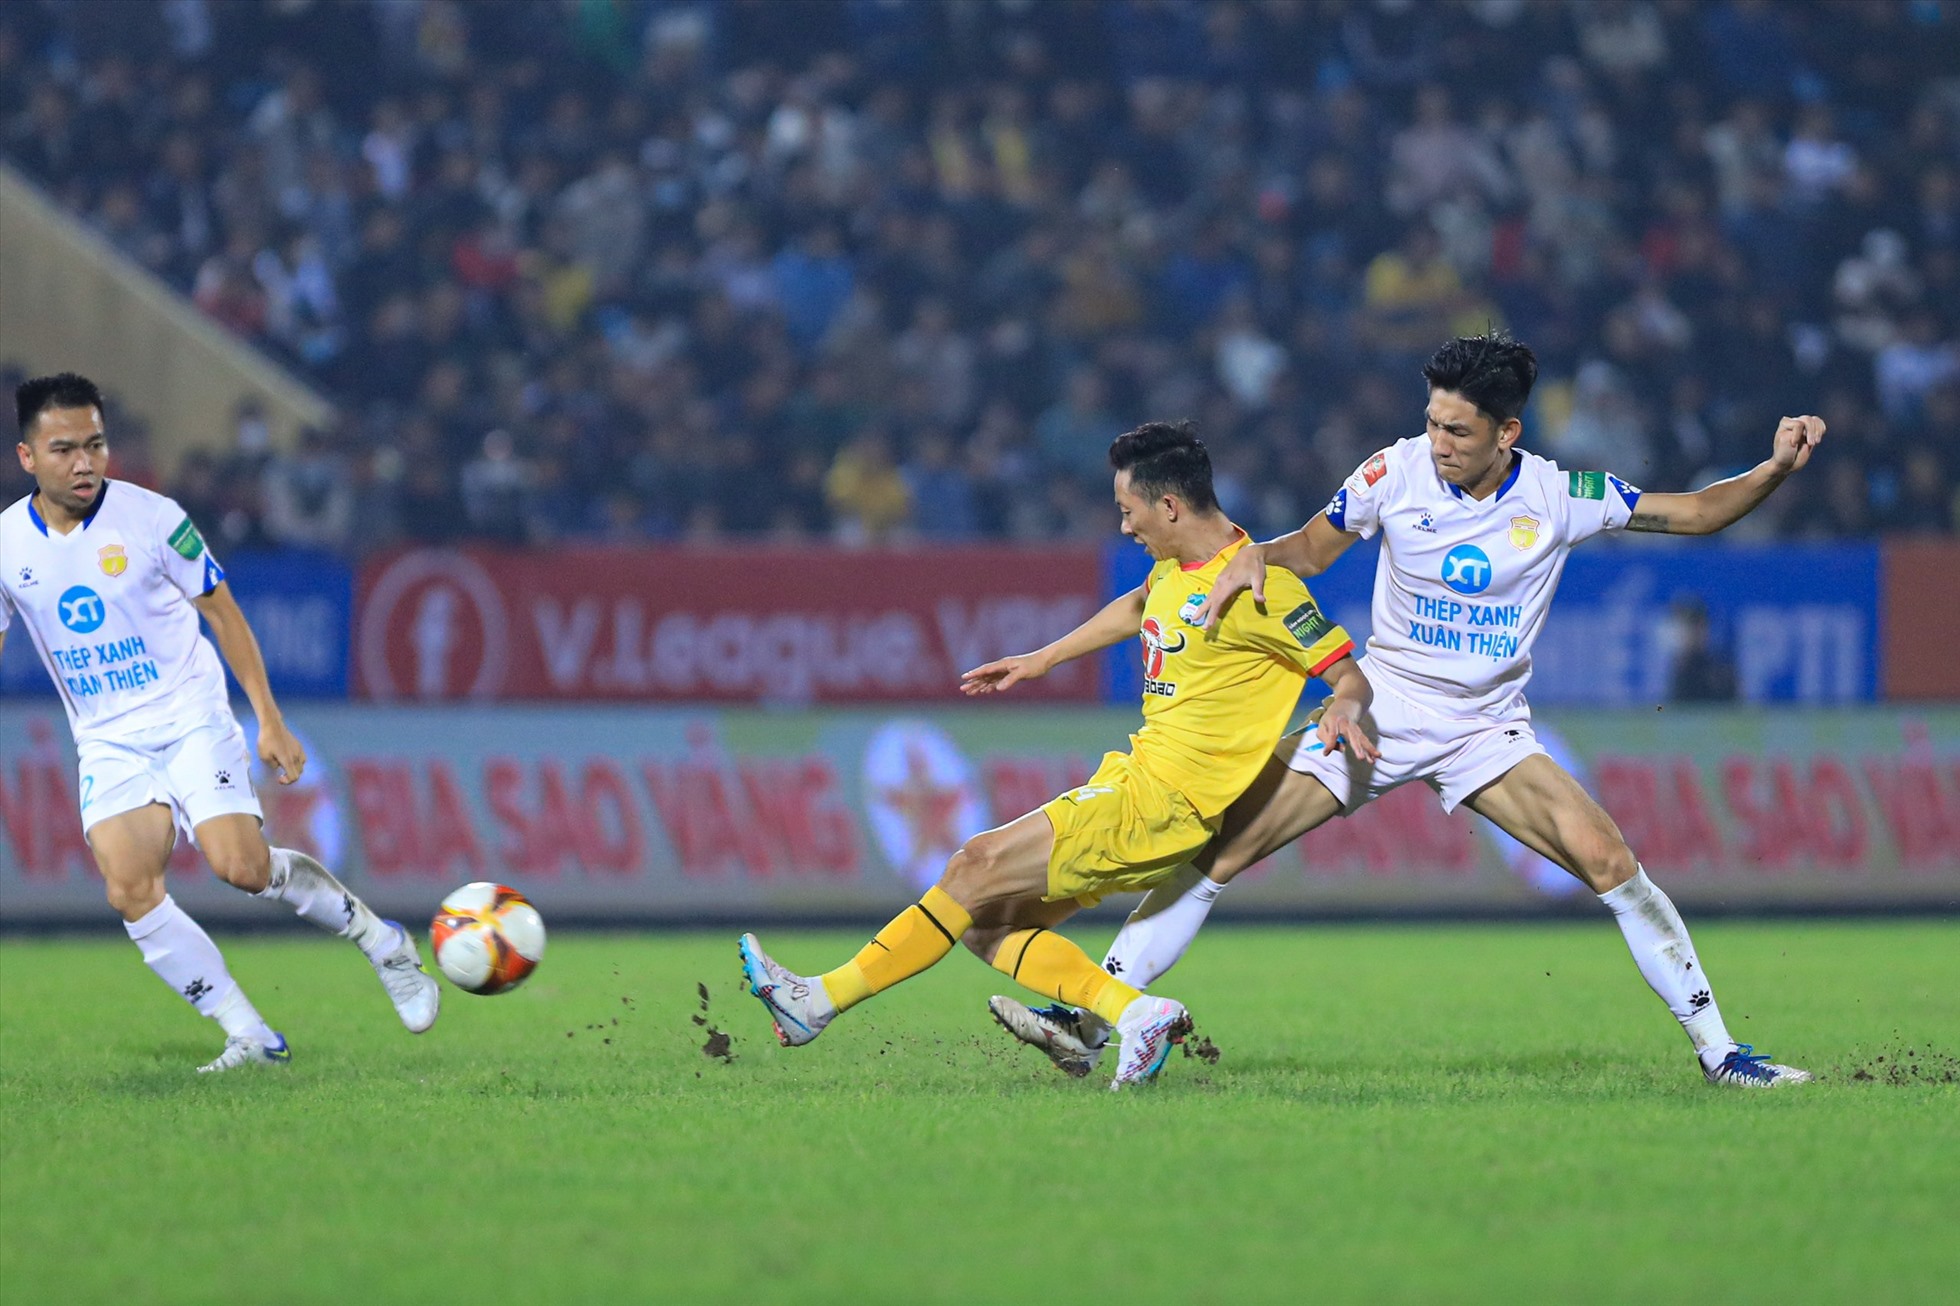 Bàn thắng của Châu Ngọc Quang không thể giúp Hoàng Anh Gia Lai có được 1 điểm trước Nam Định.